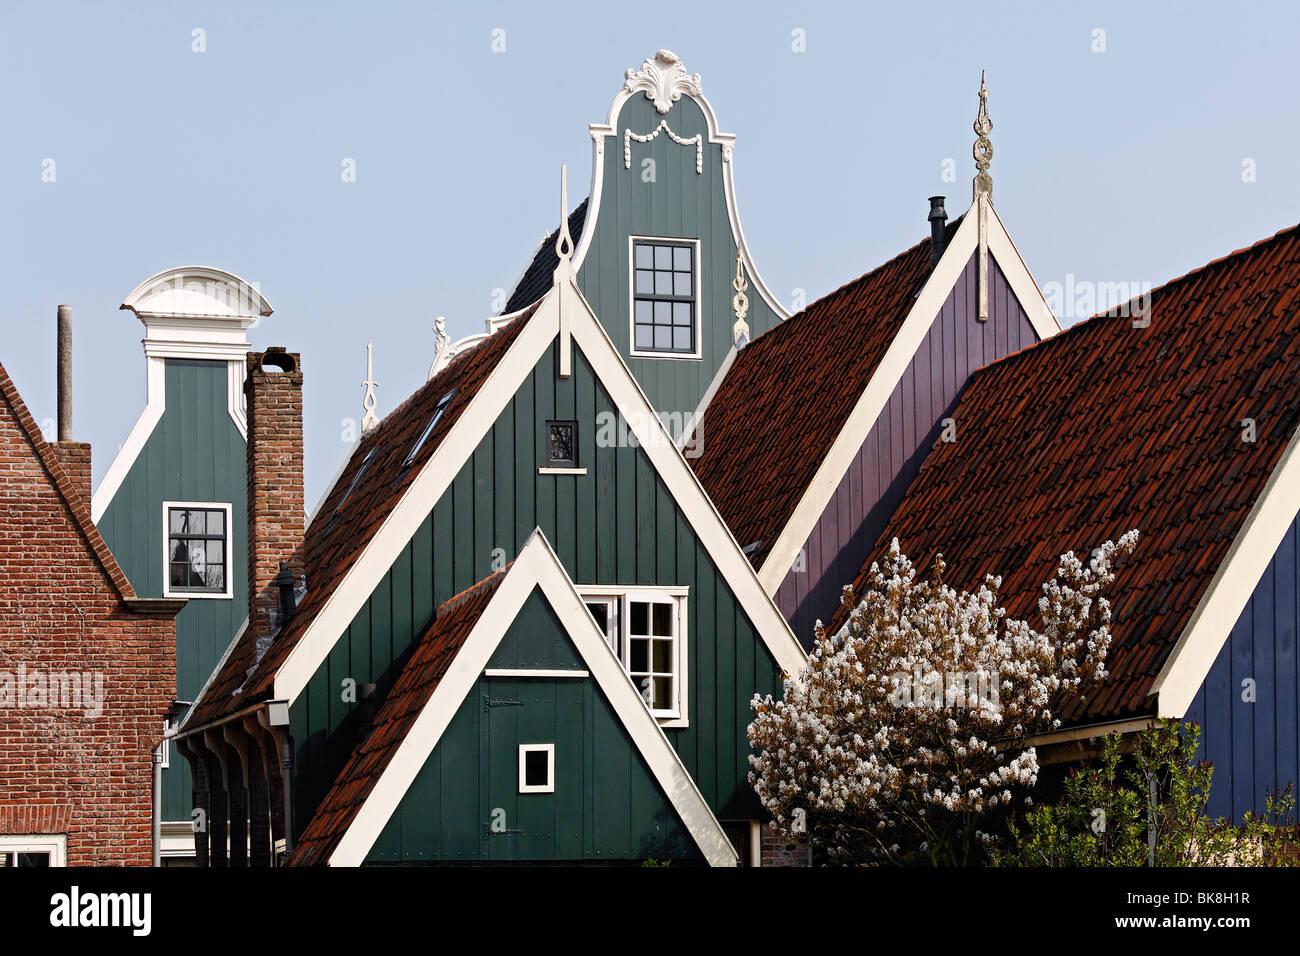 Típicas casas de madera del siglo XVII, techos, ciudad histórica de Rijp cerca de Alkmaar, en la provincia de Holanda Septentrional, Países Bajos, Foto de stock